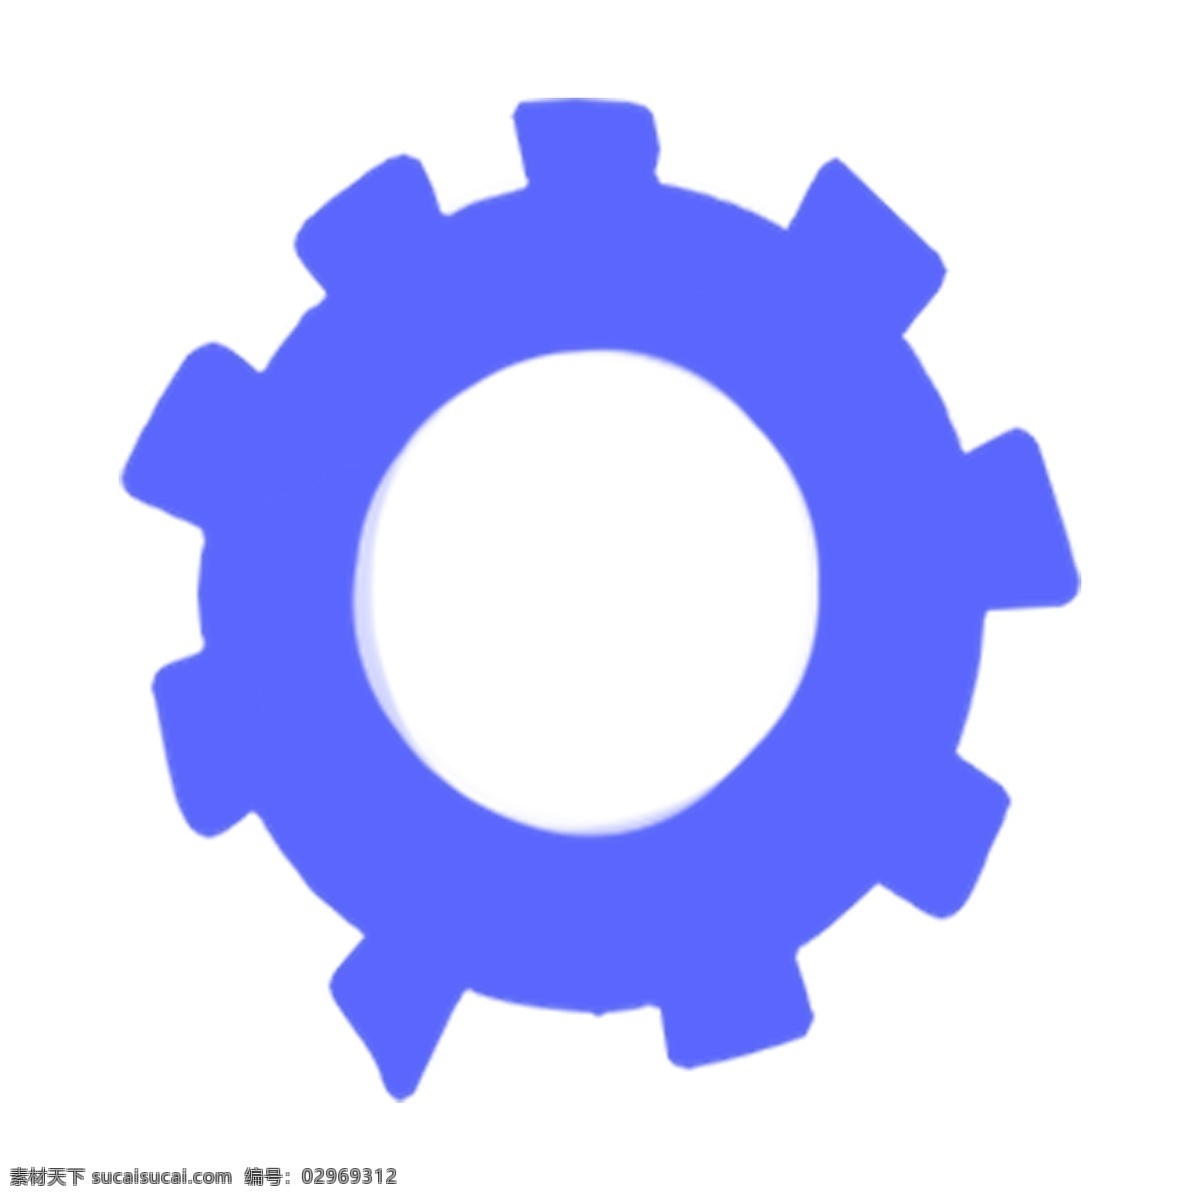 蓝色 创意 圆弧 齿轮 元素 纹理 质感 旋转 科技 科幻 扁平化 梦幻 效率 装饰 圆环